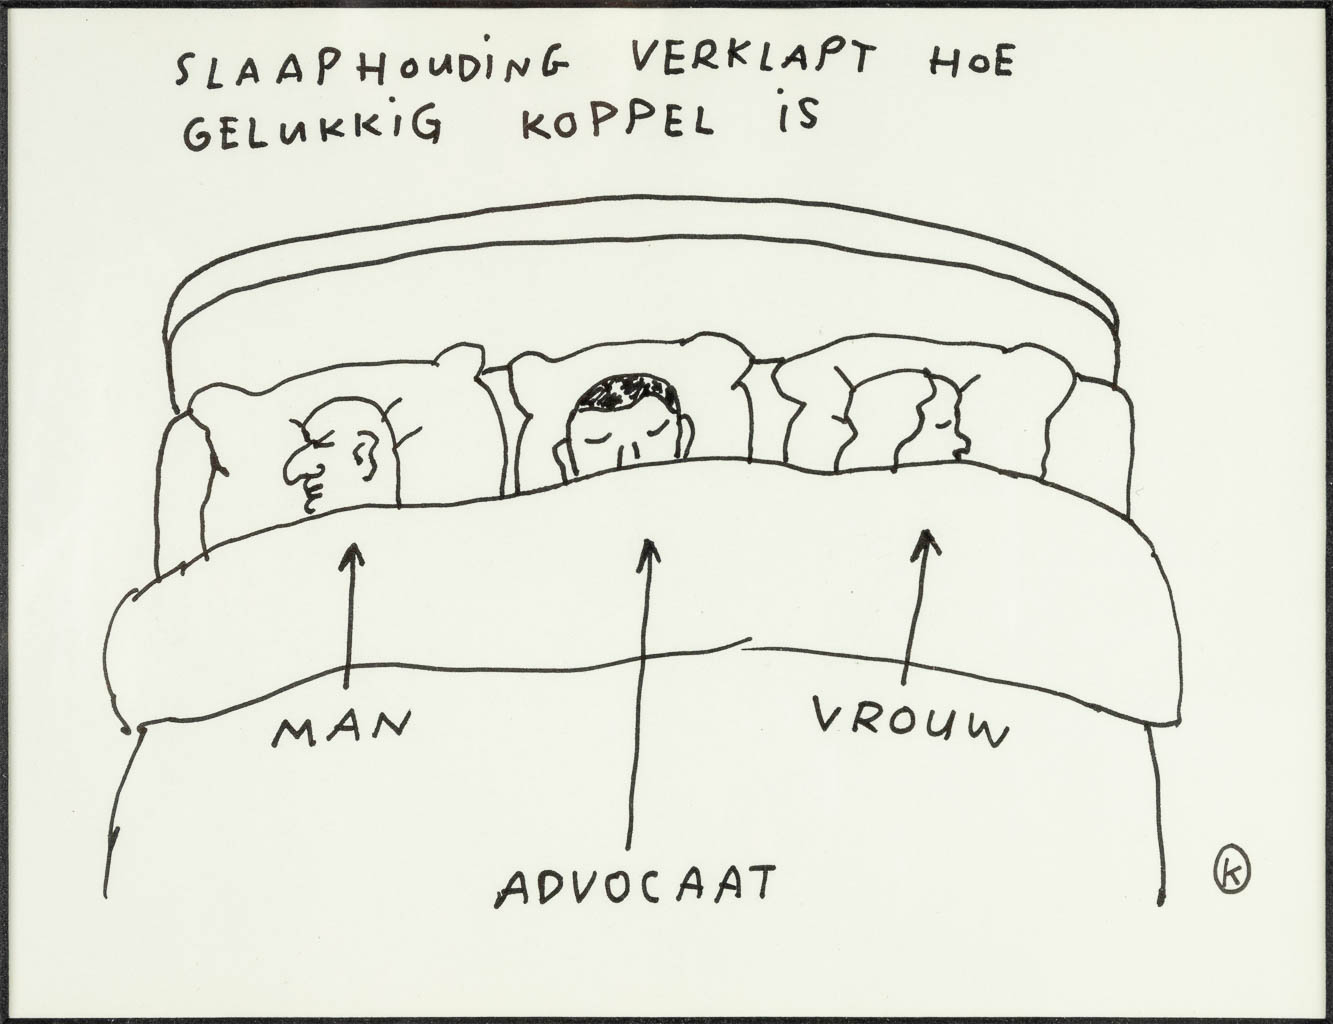 KAMAGURKA (1956) 'Slaaphouding verklapt hoe gelukkig koppel is' een tekening, pen op papier. (21 x 16 cm)